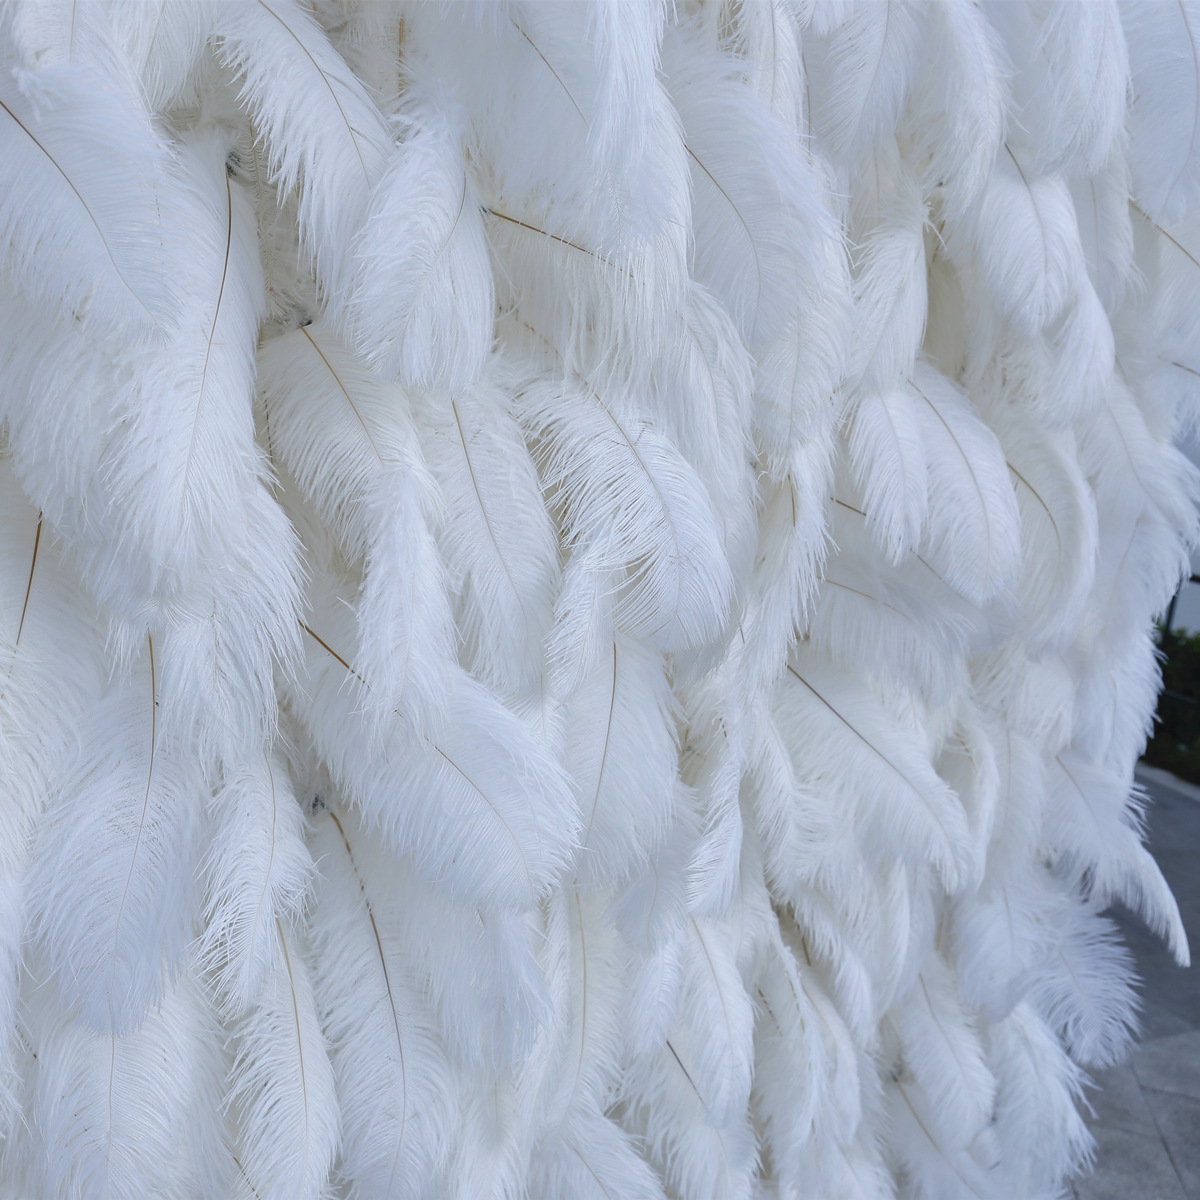 Tembok wulu putih kanthi latar mburi kain ing latar mburi hiasan rambut manuk unta